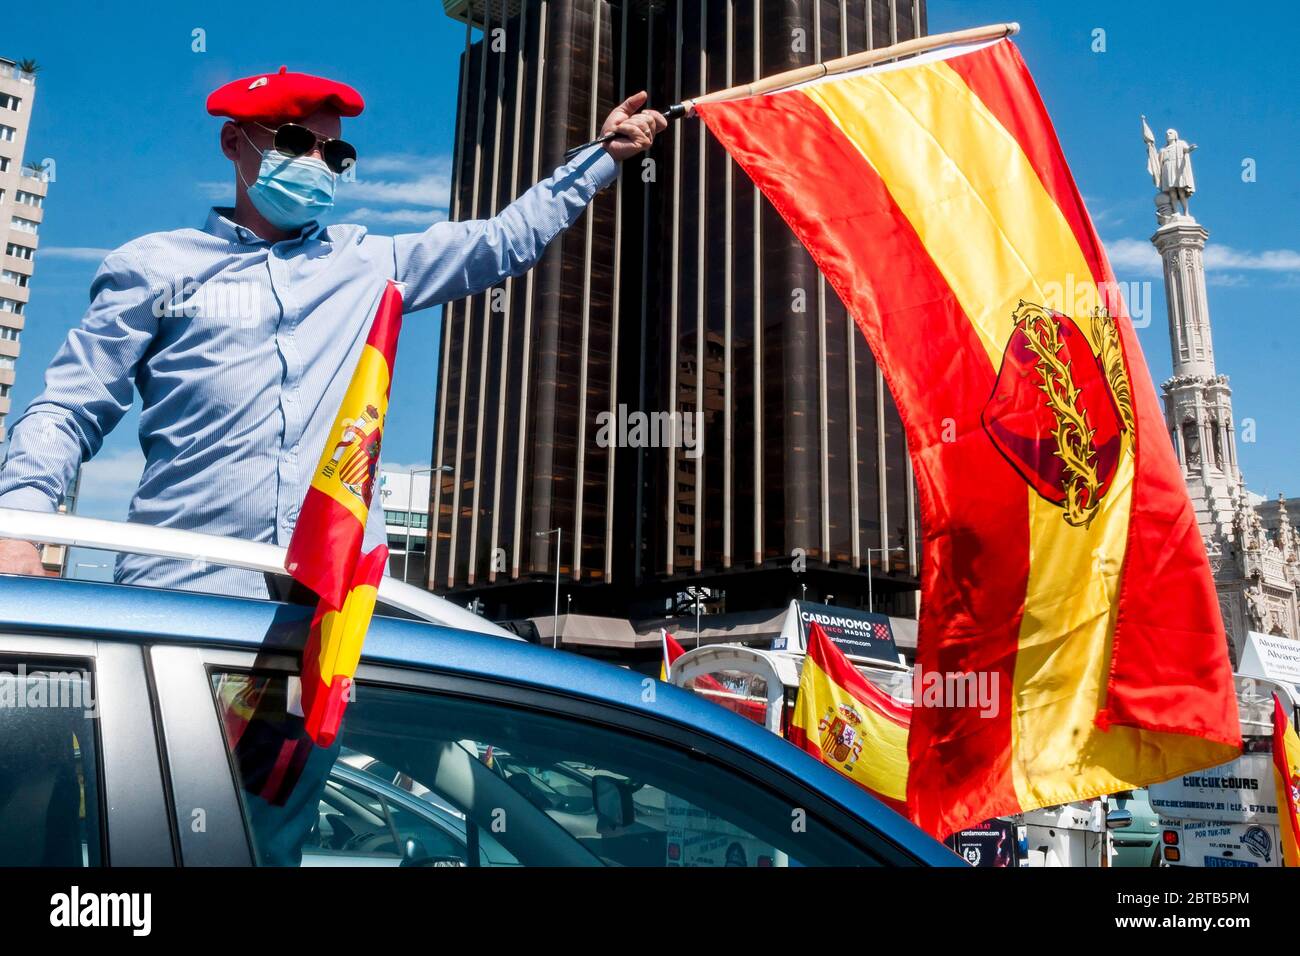 Madrid, Spanien. Mai 2020. Rechtspopulistische VOX-Autoparade, die die Regierung auffordert, wegen angeblicher Misswirtschaft während der Corona-Krise abzutreten. Madrid, 23. Mai 2020 Quelle: dpa/Alamy Live News Stockfoto